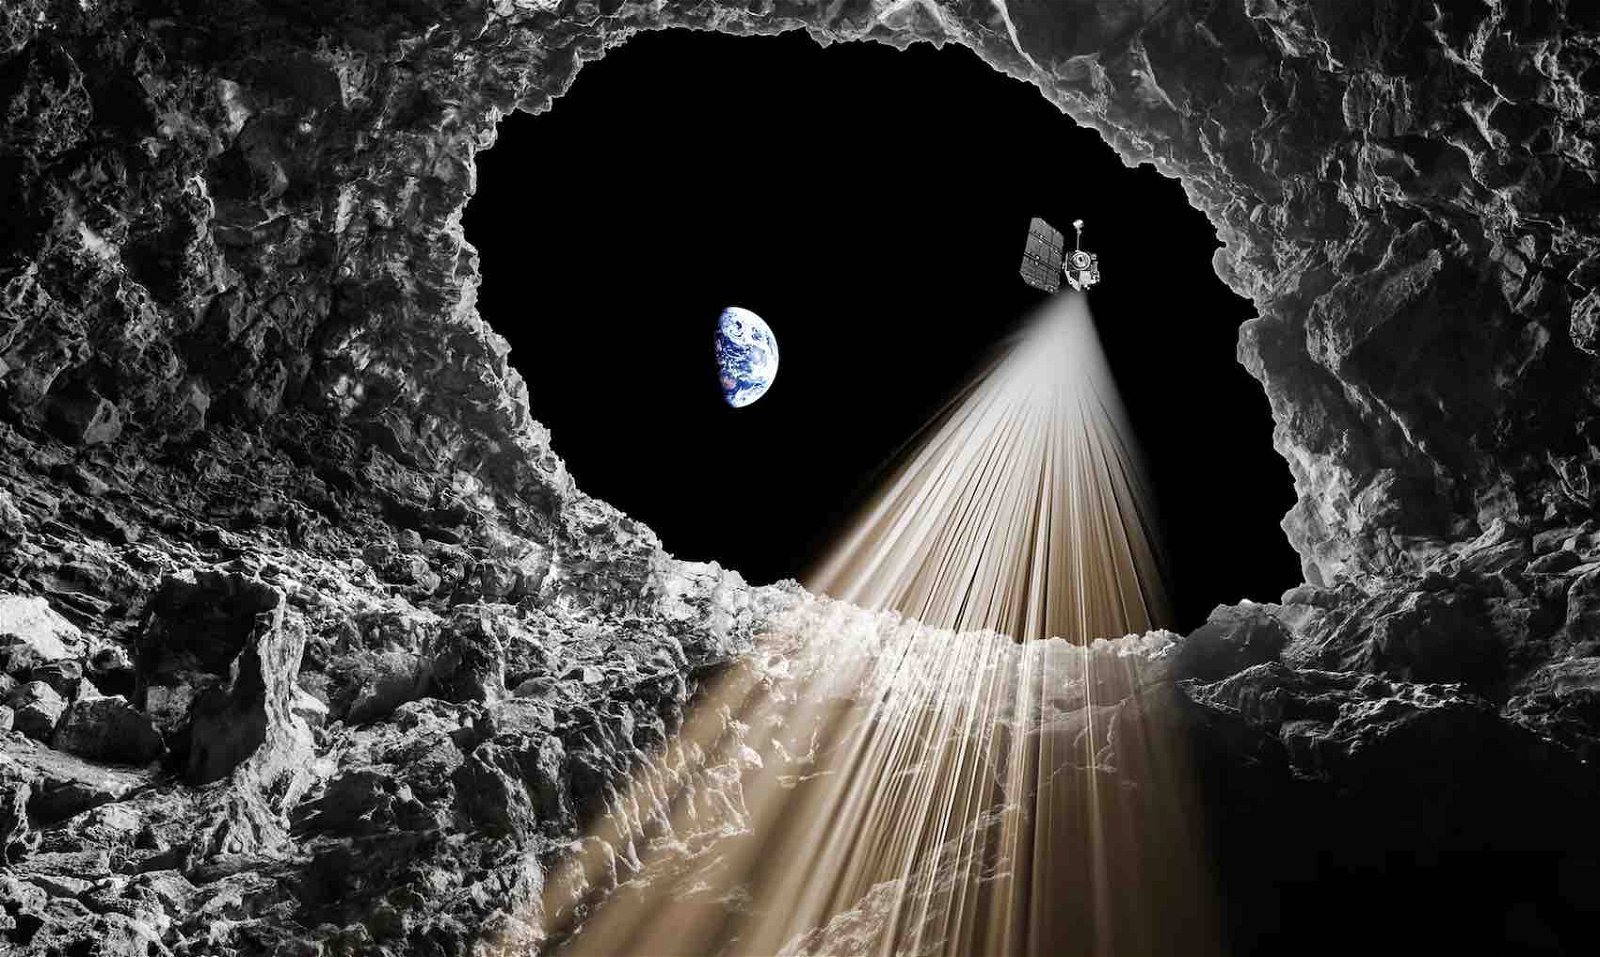 NASA radar data confirms the existence of an underground “tunnel” near the famous Apollo-era lunar landing site